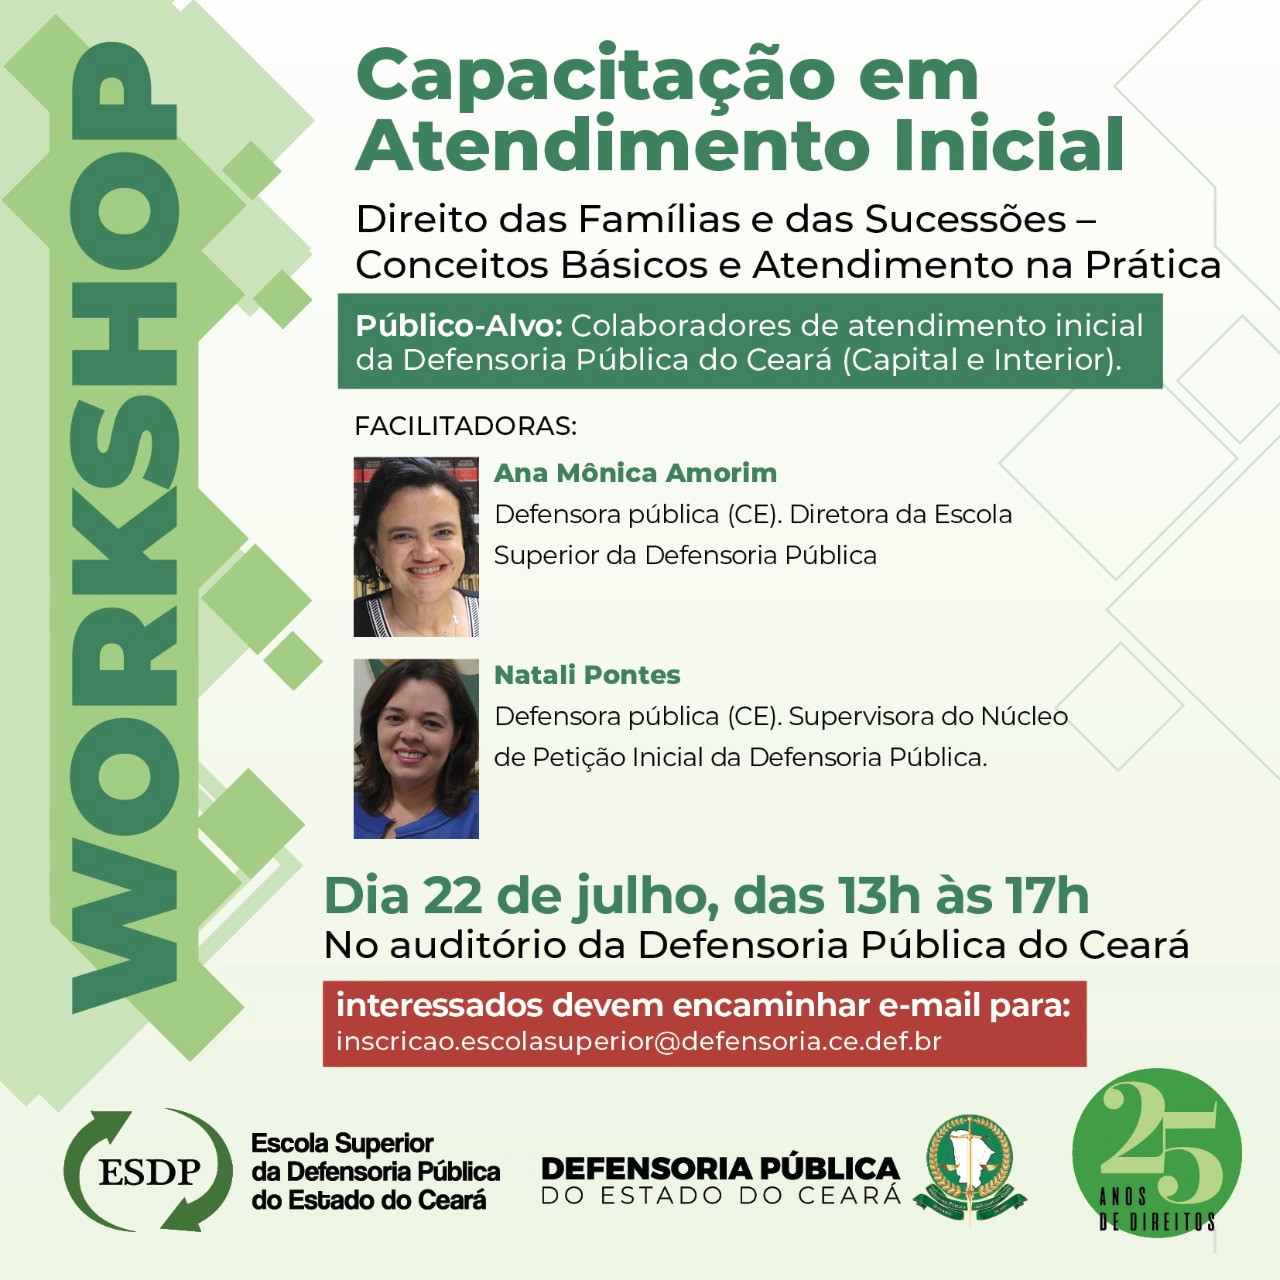 Workshop Capacitação Atendimento Inicial - Direito das Famílias e das Sucessões